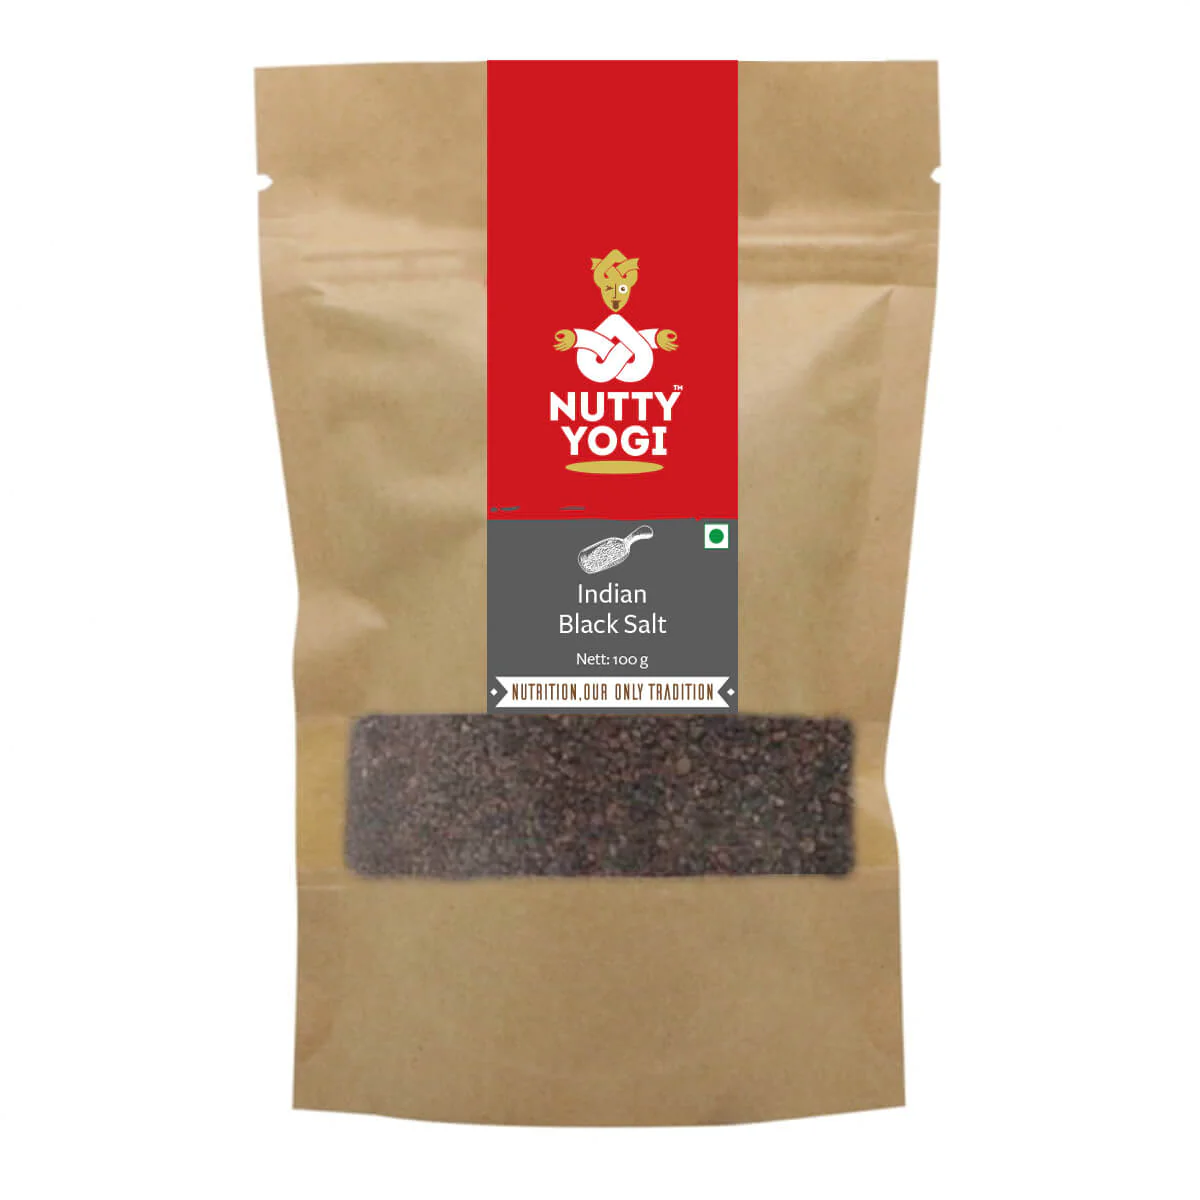 Product: Nutty Yogi Black Salt Powder 100 g